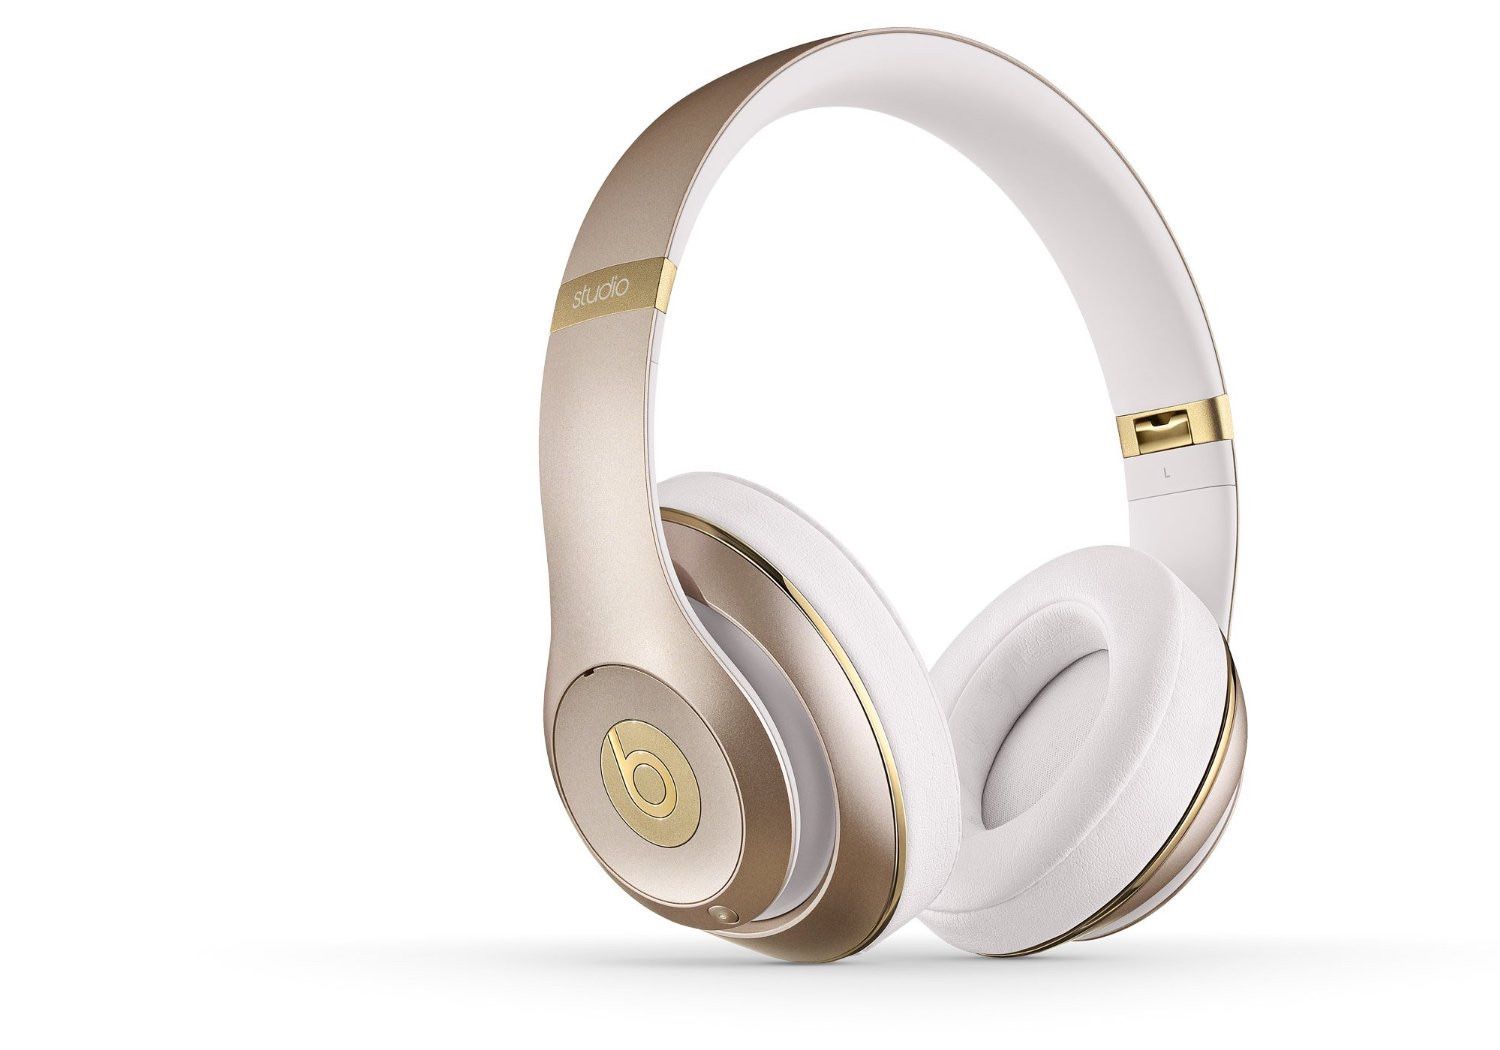 Beats Wireless Studio 2.0 Over-the-Ear Headphones